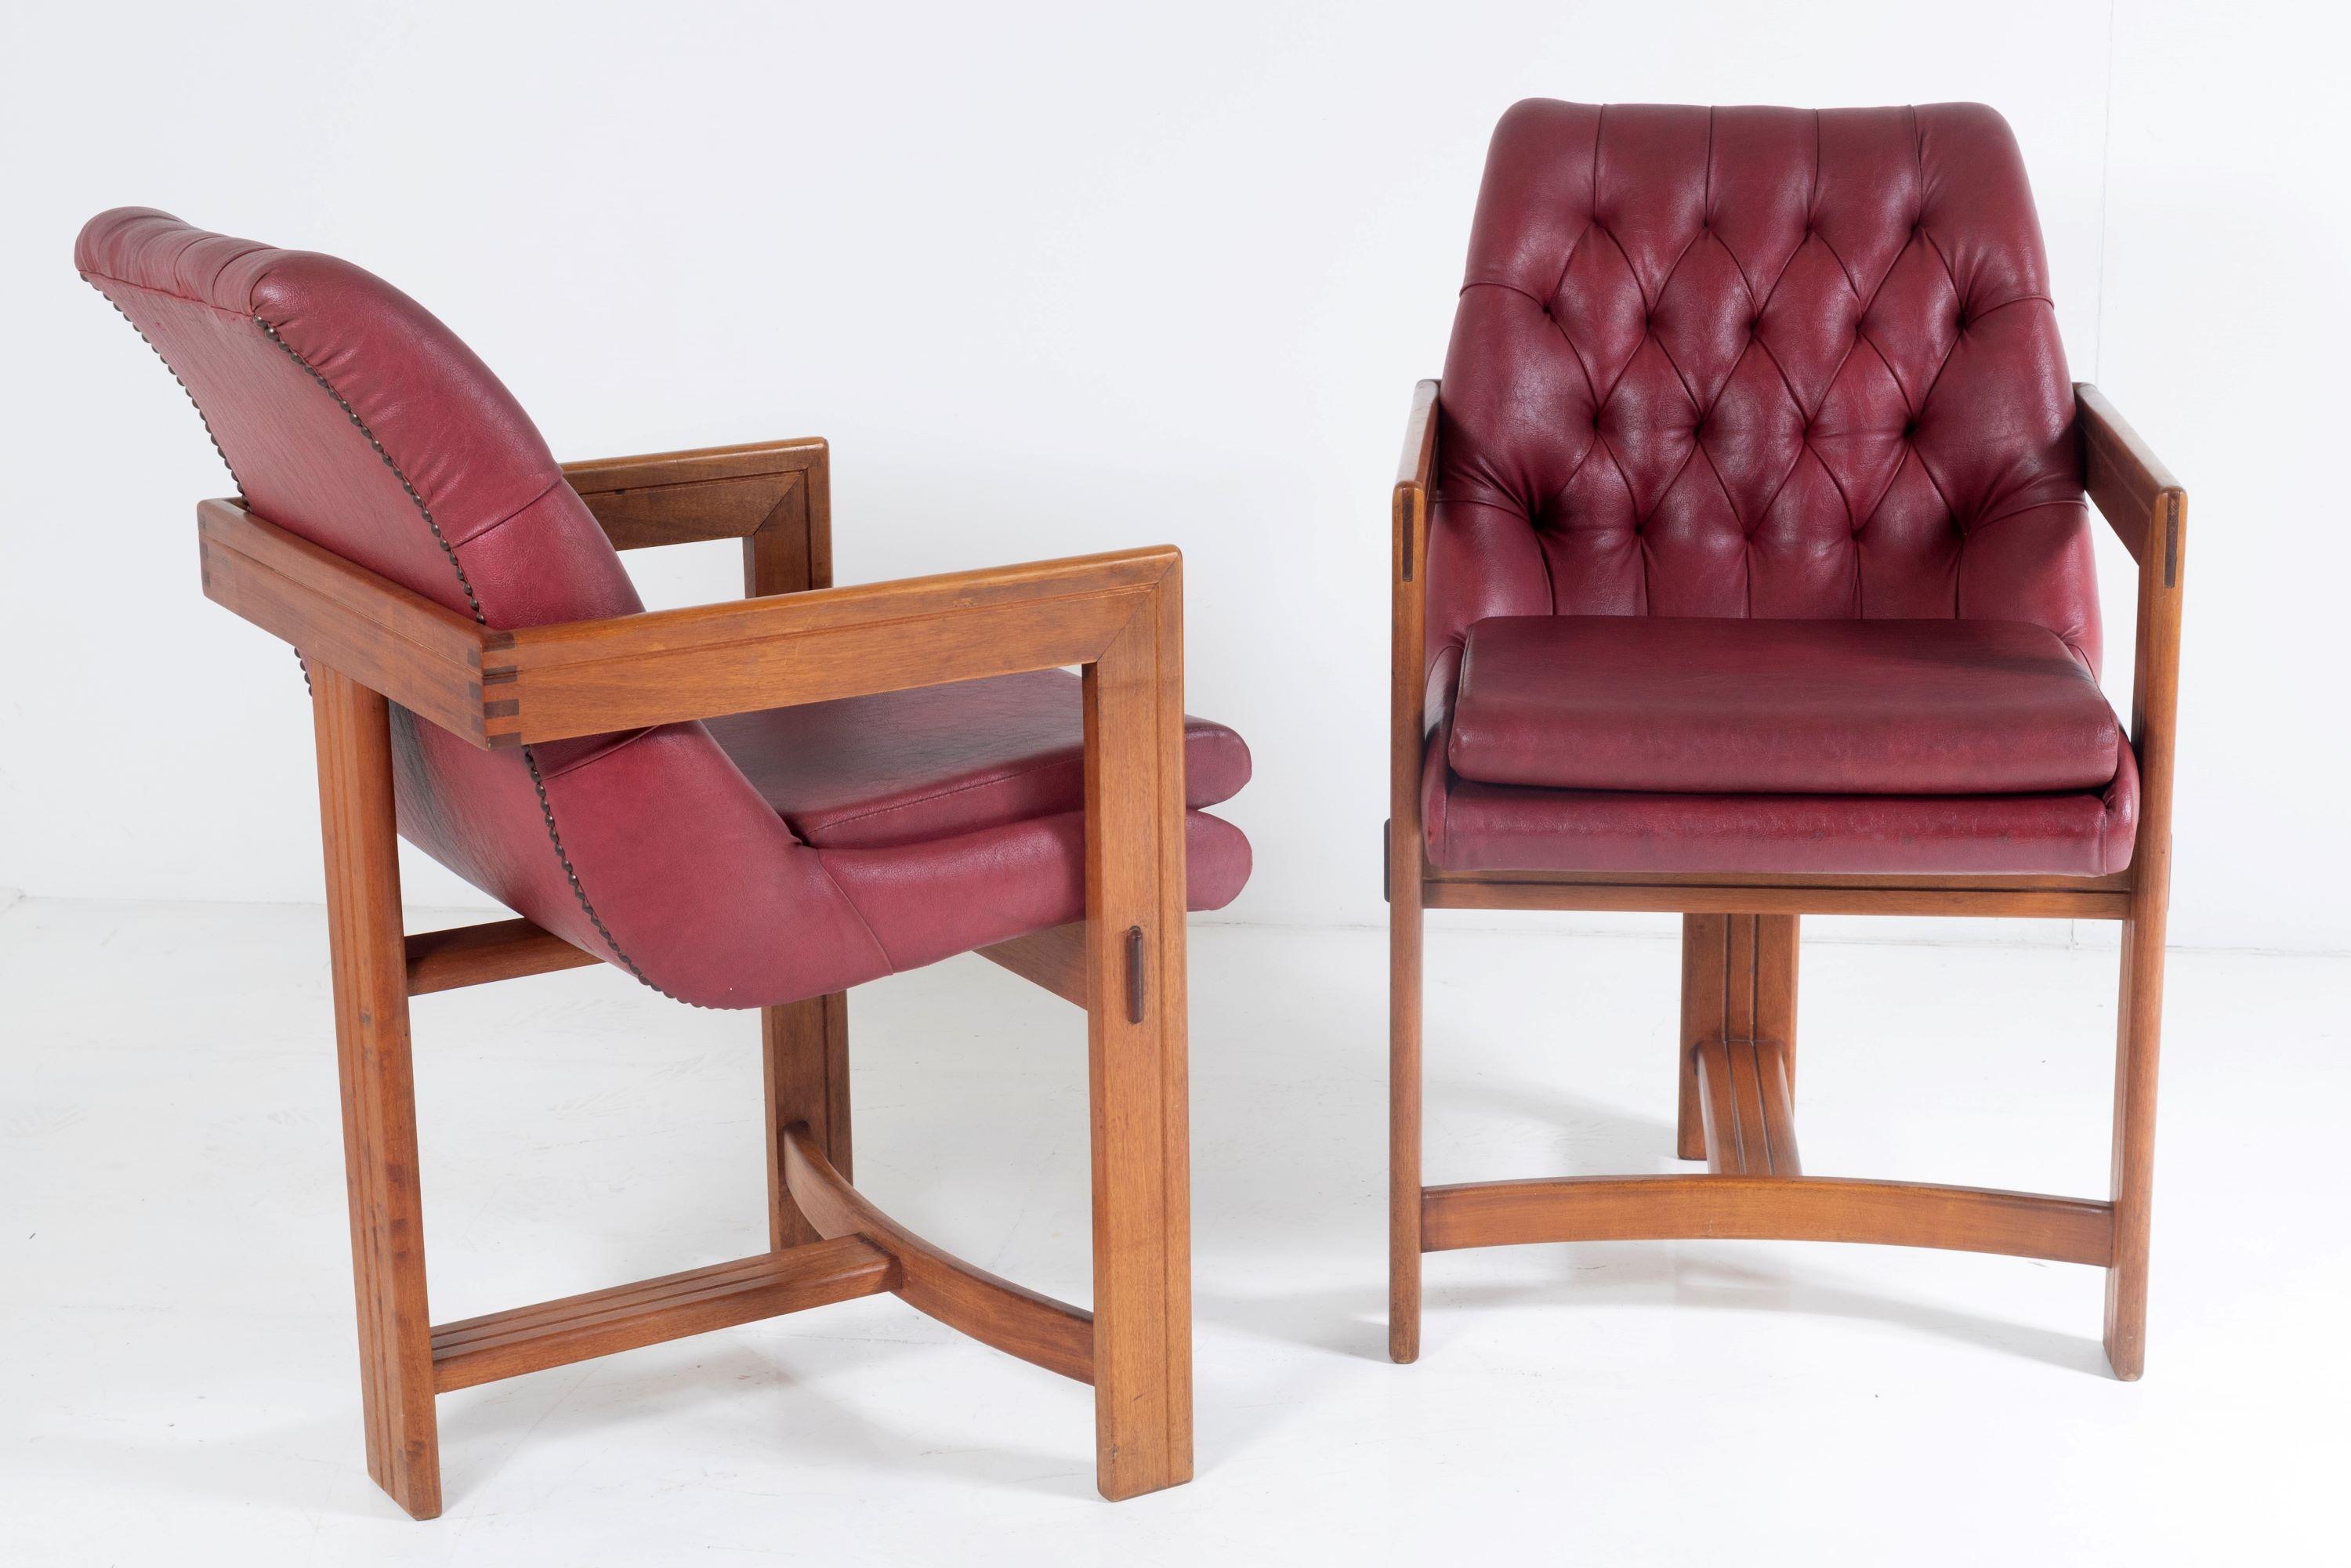 Paire de chaises de bureau de bibliothèque de style Bauhaus, à la manière de Tobia Scarpa.
Cette paire unique a un style et une couleur magnifiques. Magnifiquement conçu avec deux pieds avant s'élevant jusqu'aux accoudoirs qui s'enroulent autour du